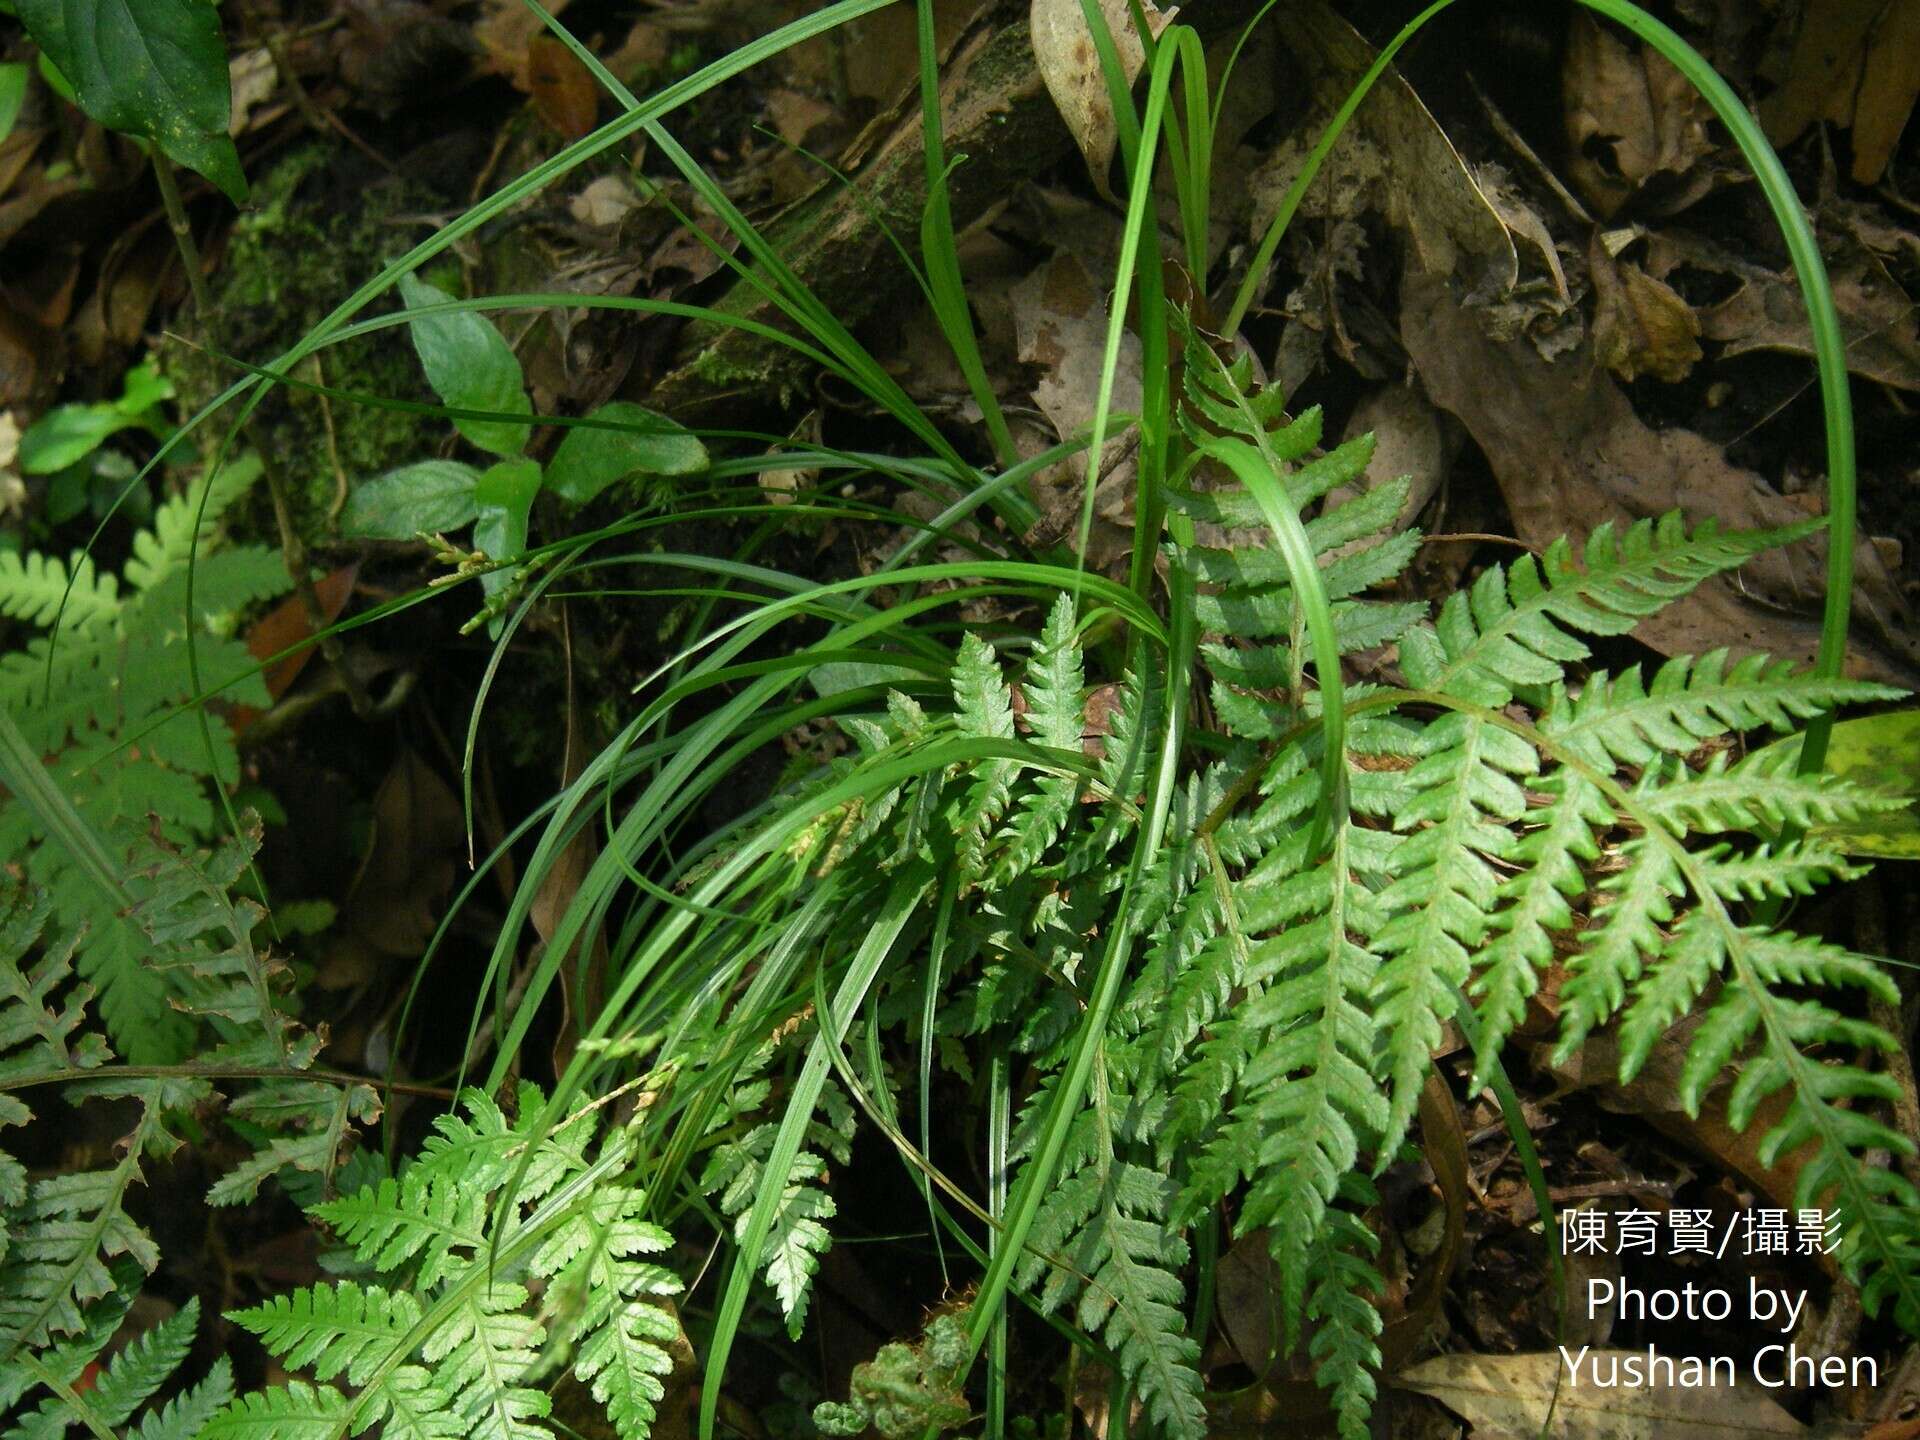 Image of Carex tristachya var. pocilliformis (Boott) Kük.